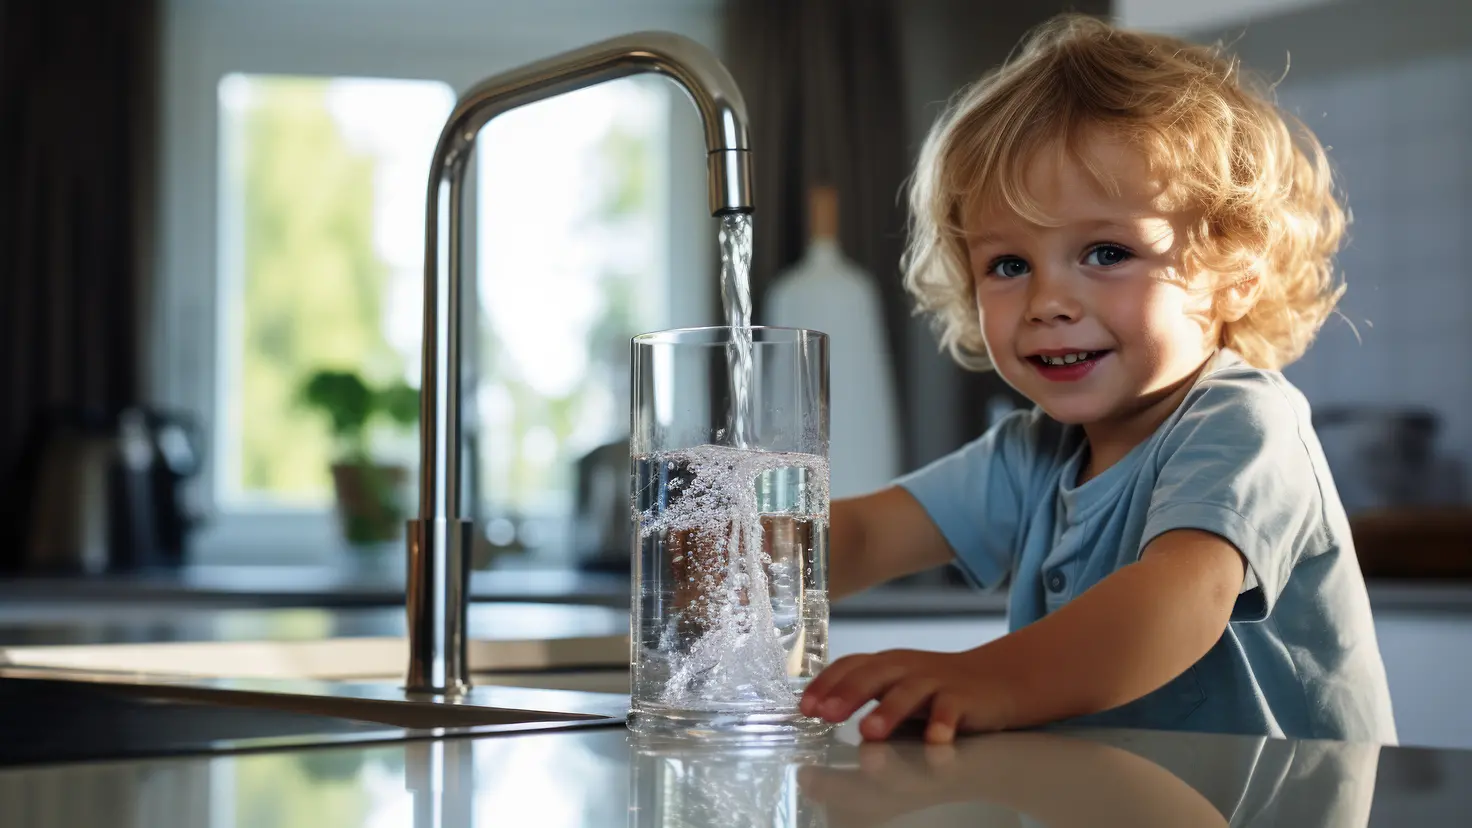 Zu sehen auf diesem AI generierten Bild ist ein dem Betrachter zugewandtes Kind, das sich gerade ein Glas Wasser am Wasserhahn füllt.